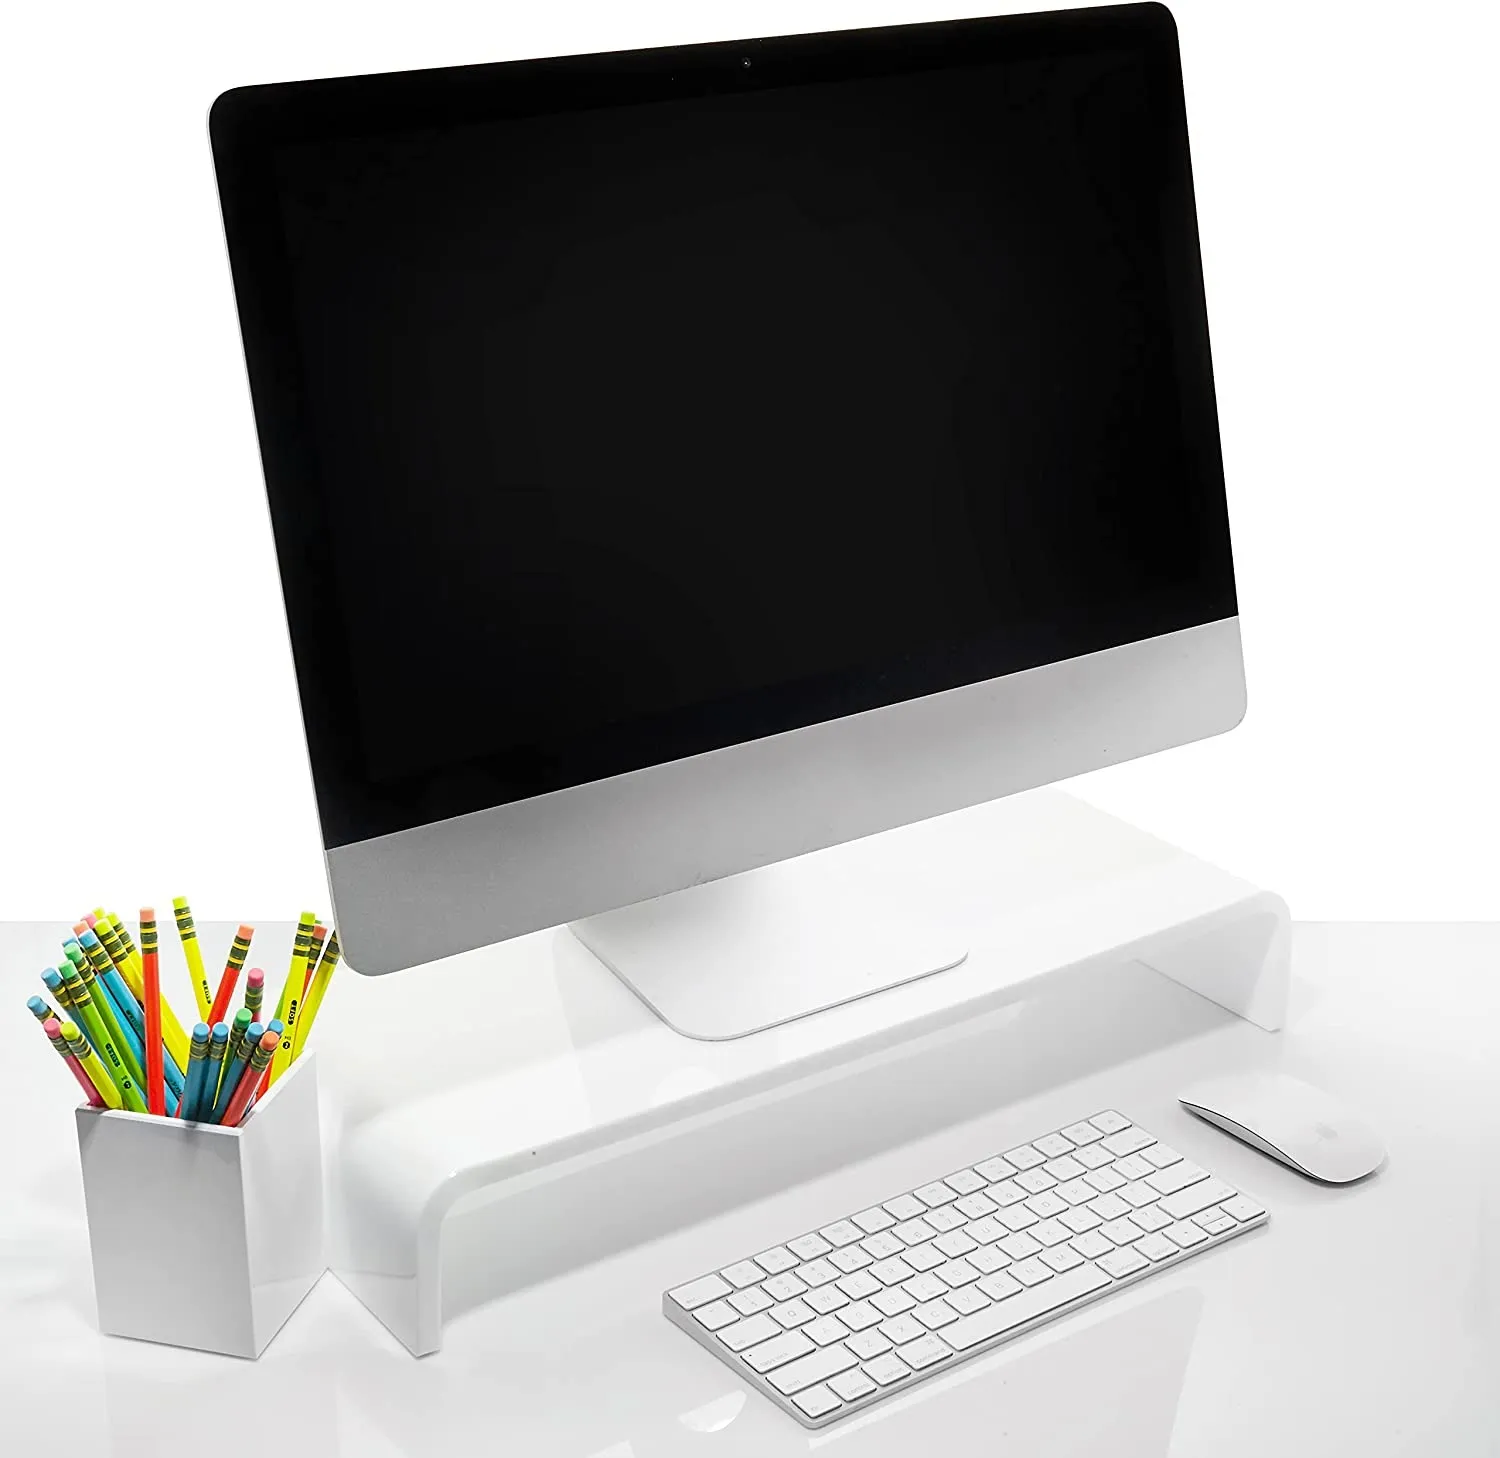 Akrilik monitör standı eşleşen kalem tutucu, 12mm kalın temizle akrilik monitör yükseltici, dizüstü bilgisayar standı, ofis ve iş. Bilgisayar masası yükseltici